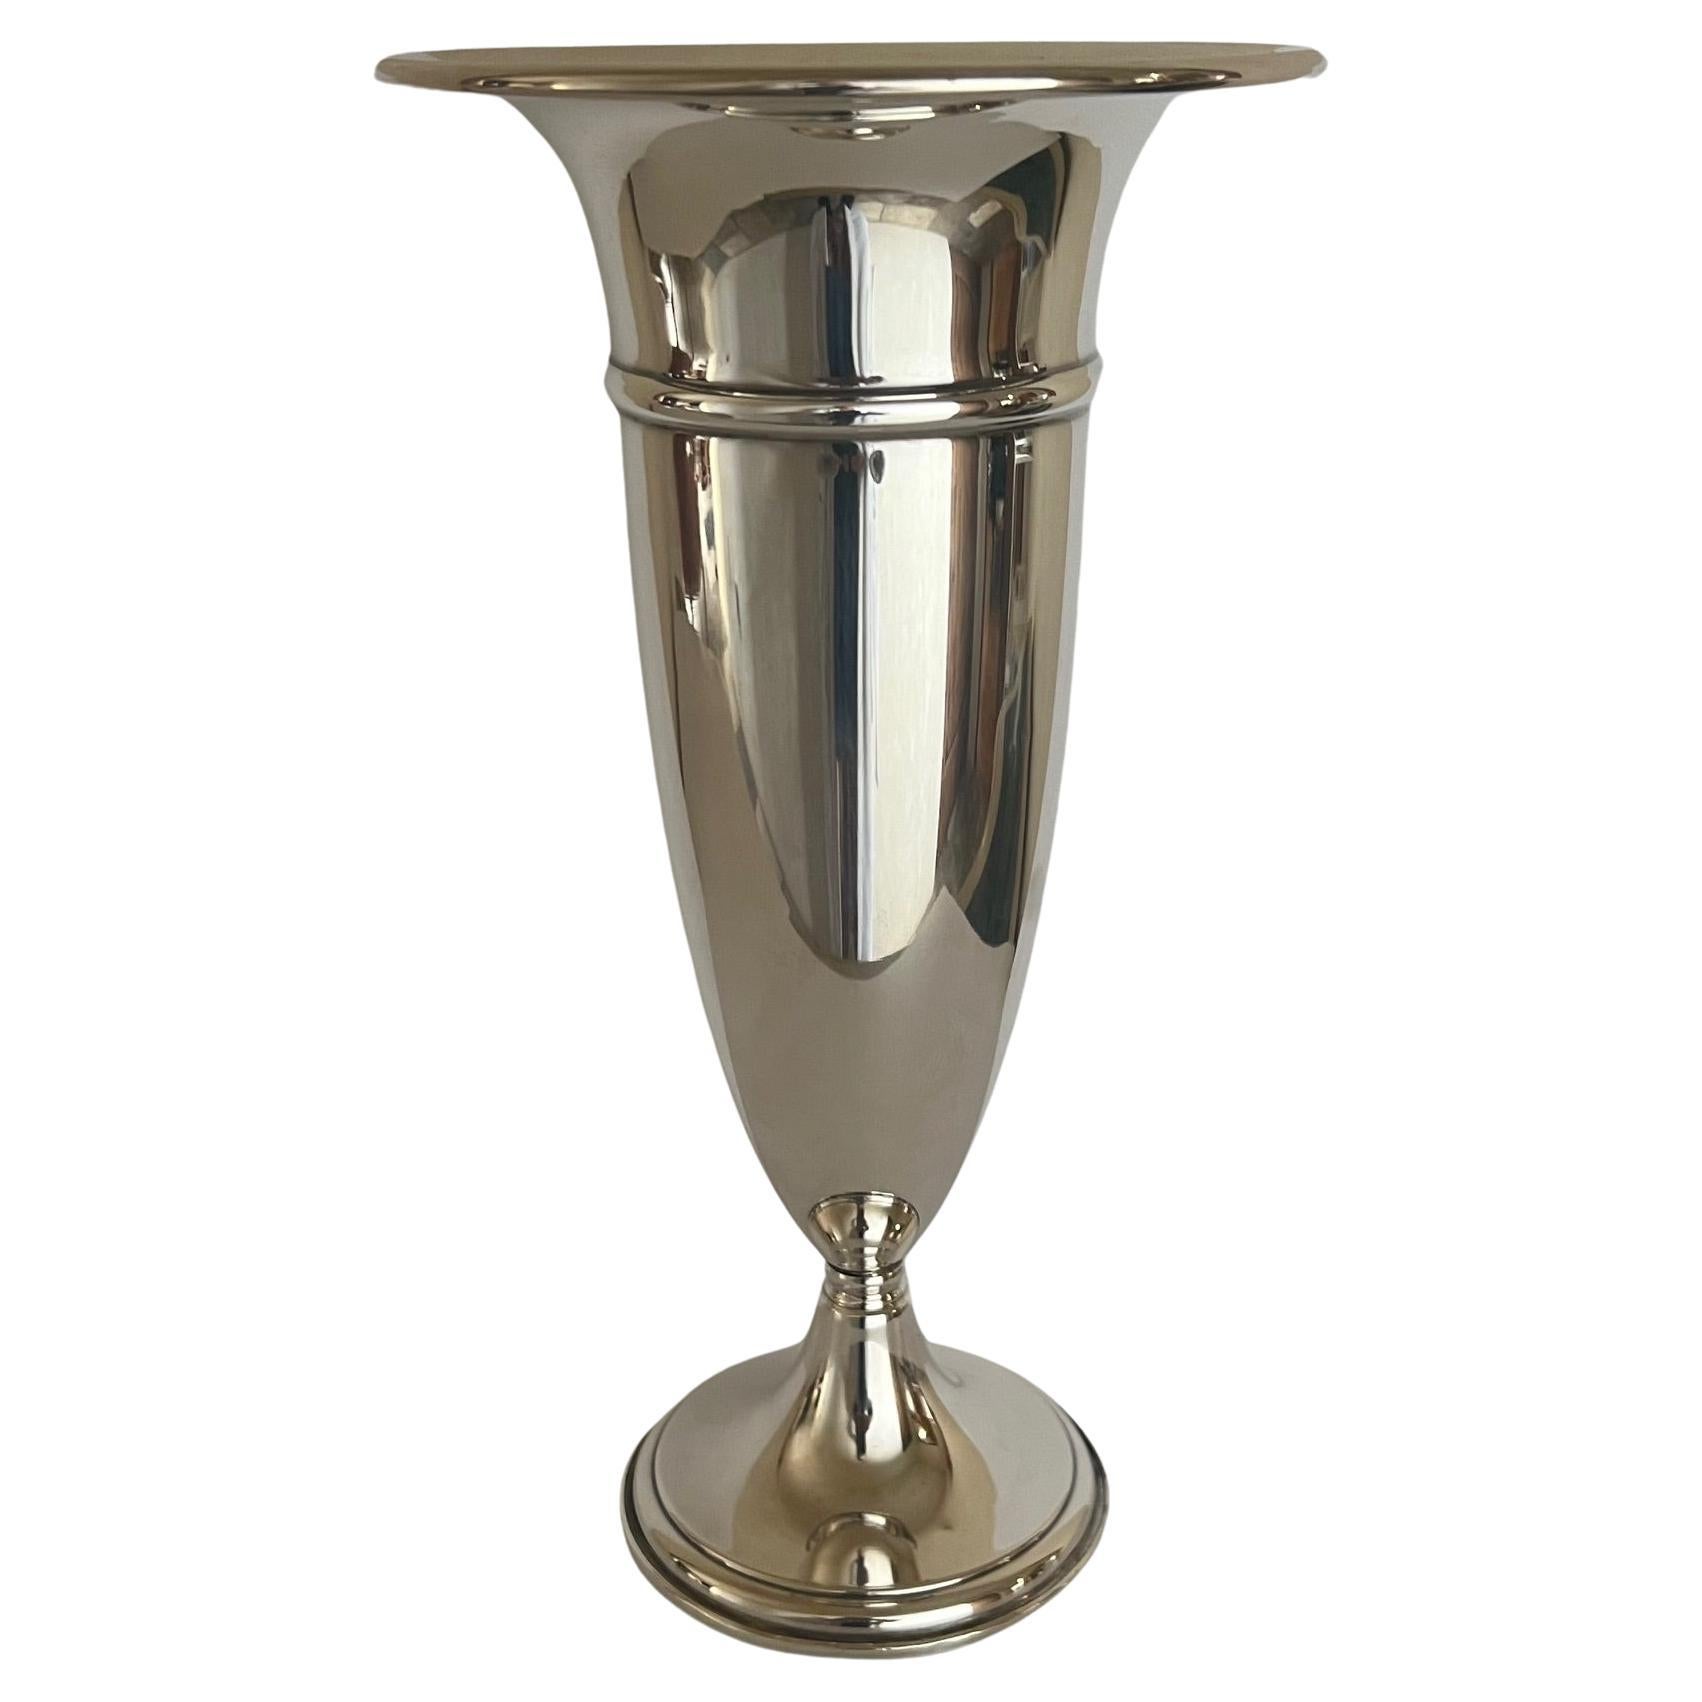 Preisner Sterling Silver Trumpet Vase